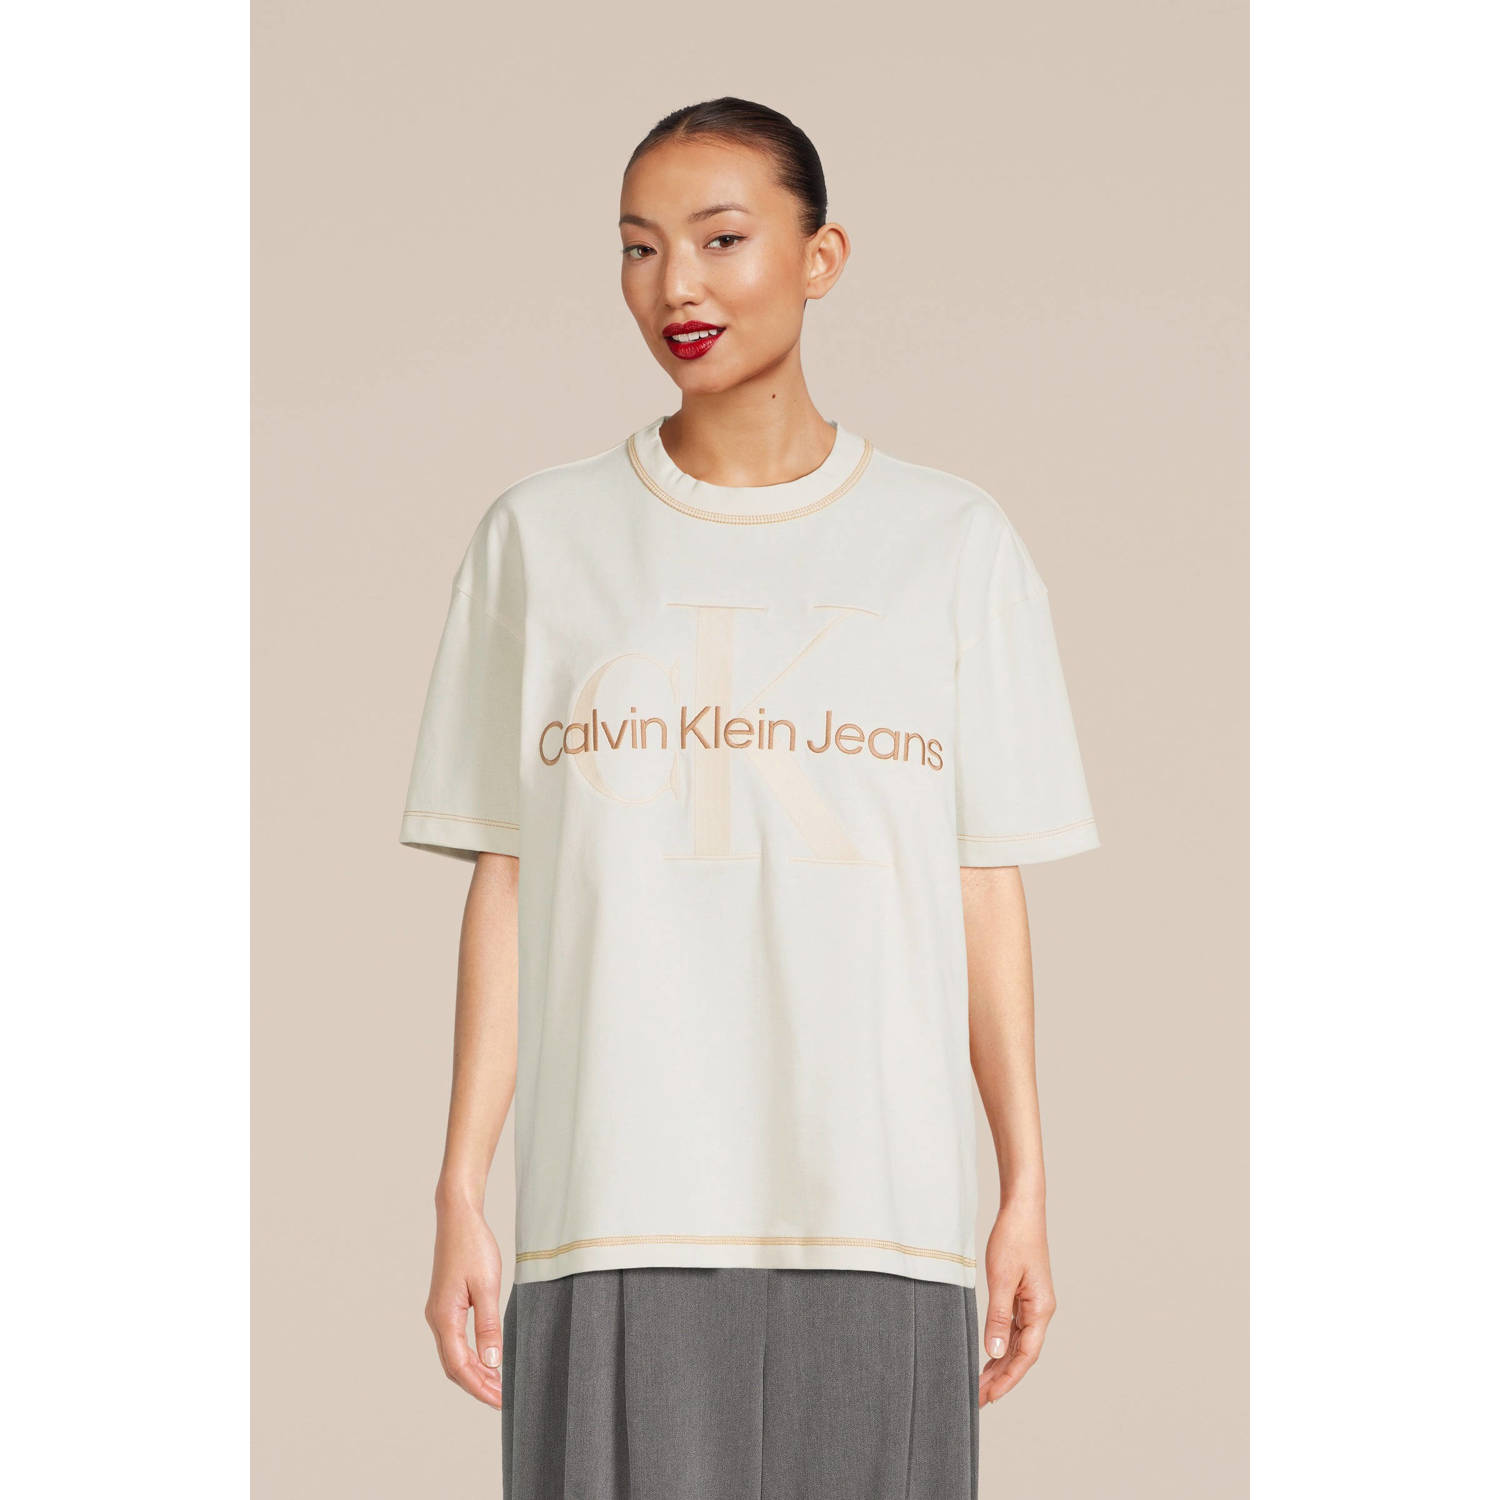 CALVIN KLEIN JEANS T-shirt met logo wit